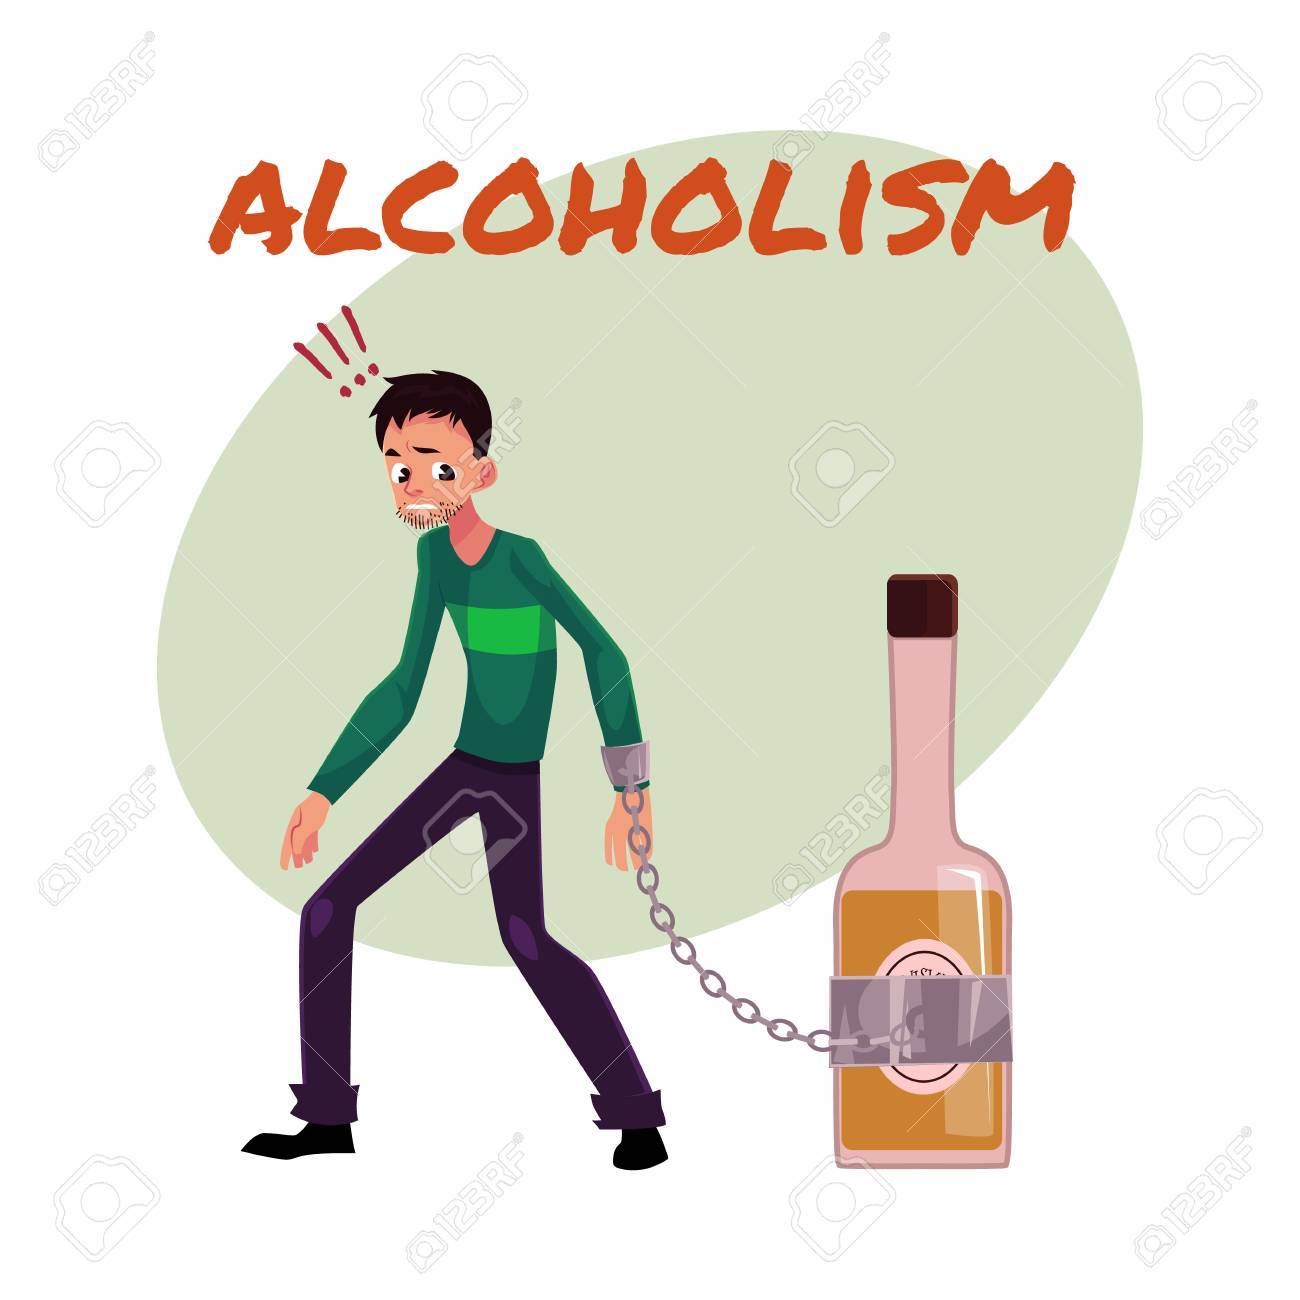 alcoholism.jpg